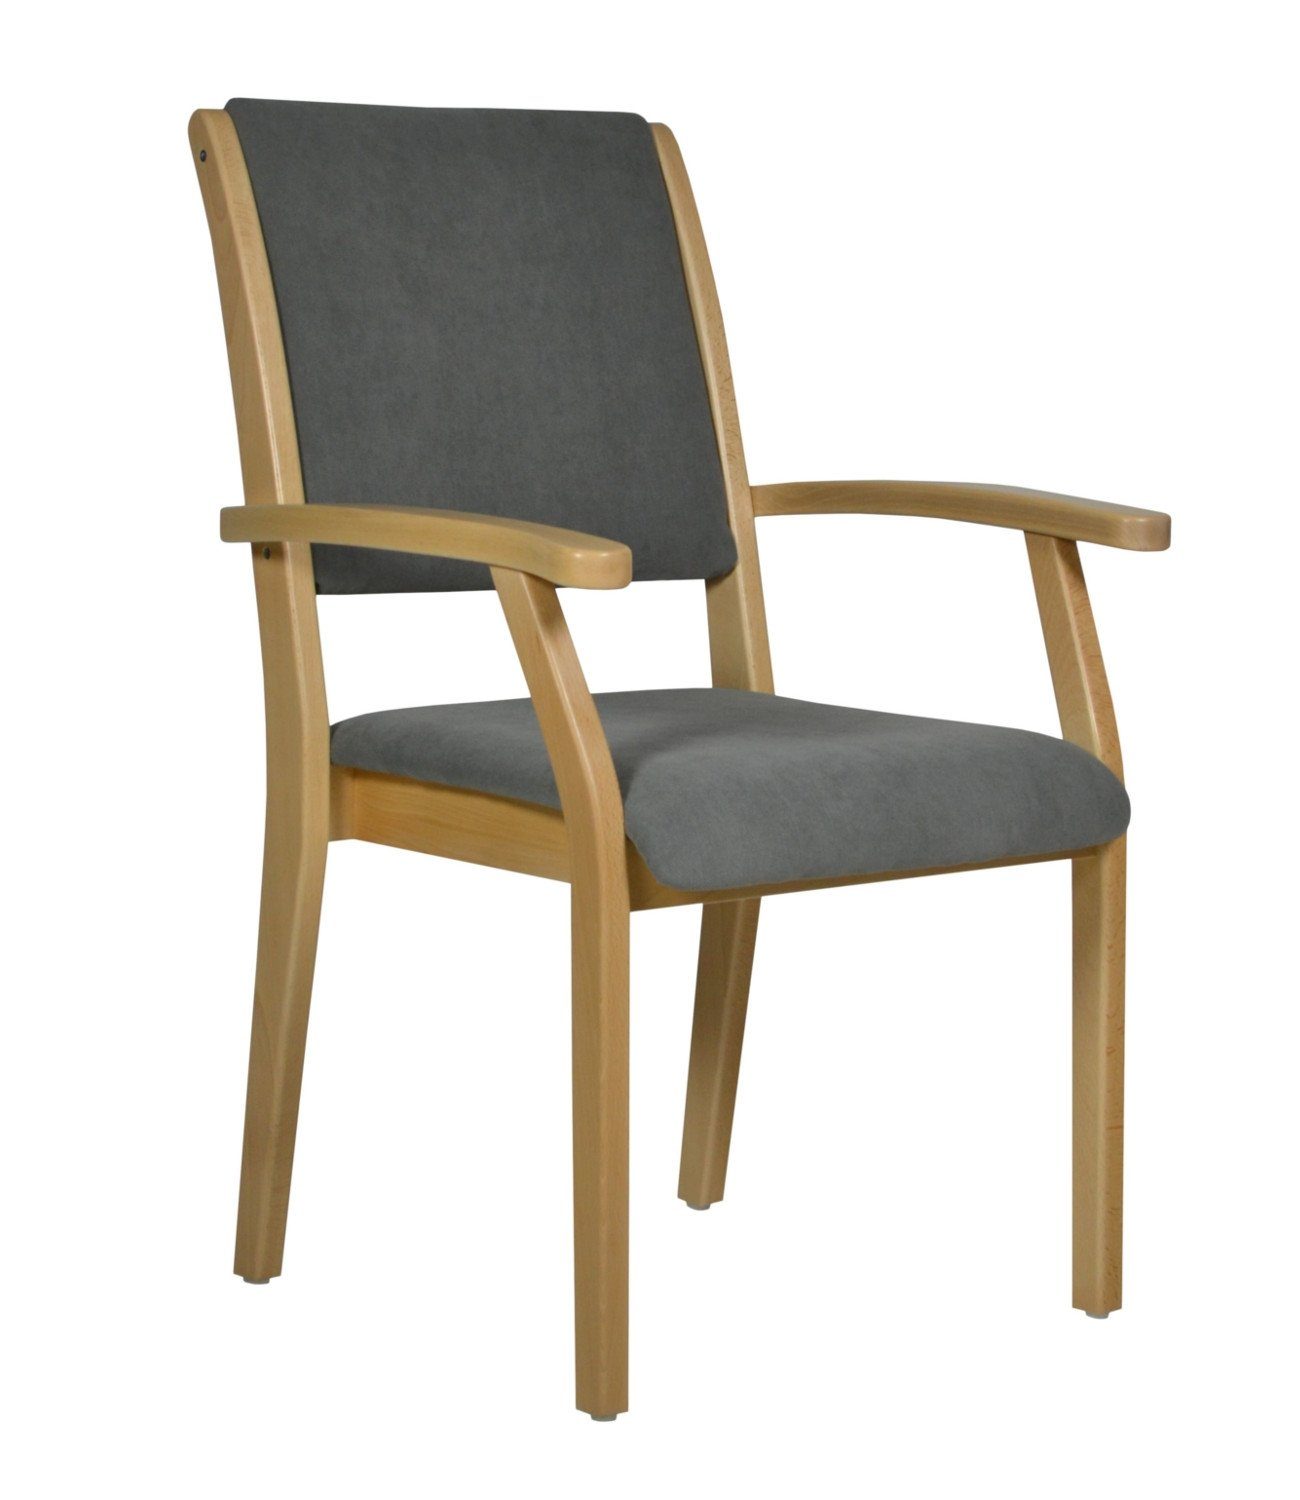 Devita Stuhl Seniorenstuhl Pflegestuhl Kerry - Verschiedene Sitzhöhen (Einzel), stapelbar, standfest, verschieden Sitzhöhe wählbar, versch. Bezüge wählbar